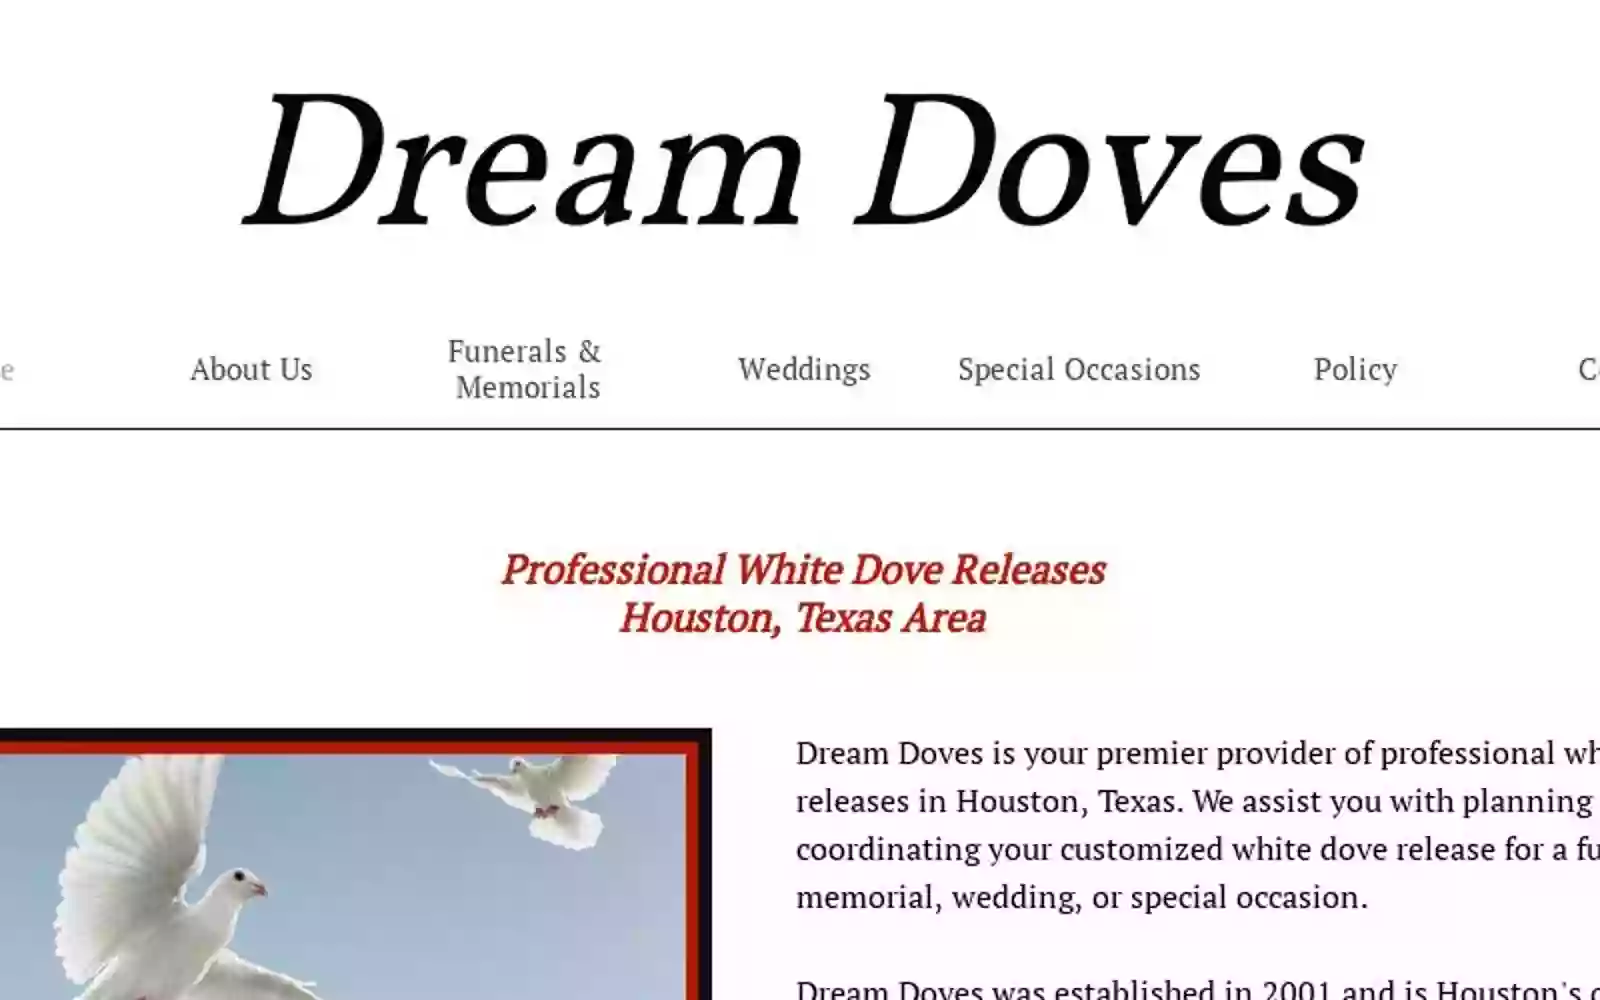 Houston Dream Doves